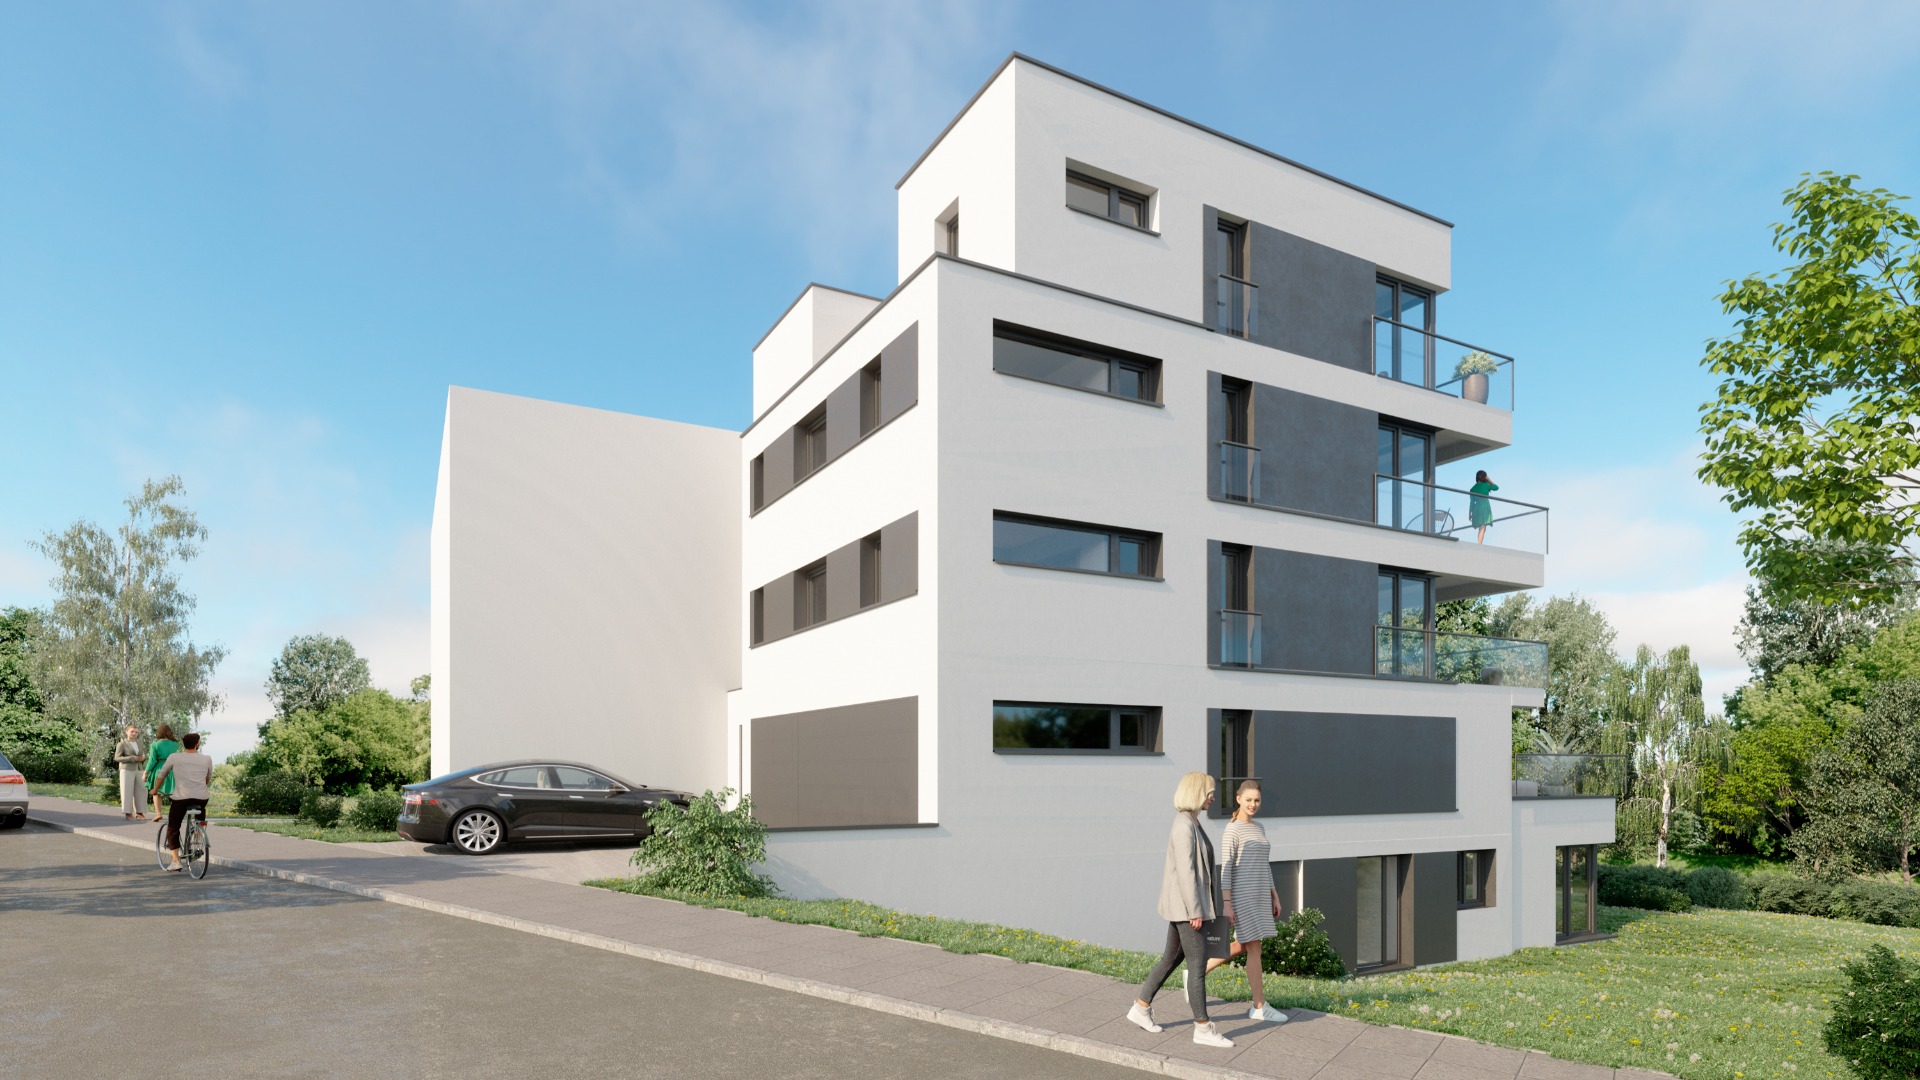 Apartment building, Limpertsbierg